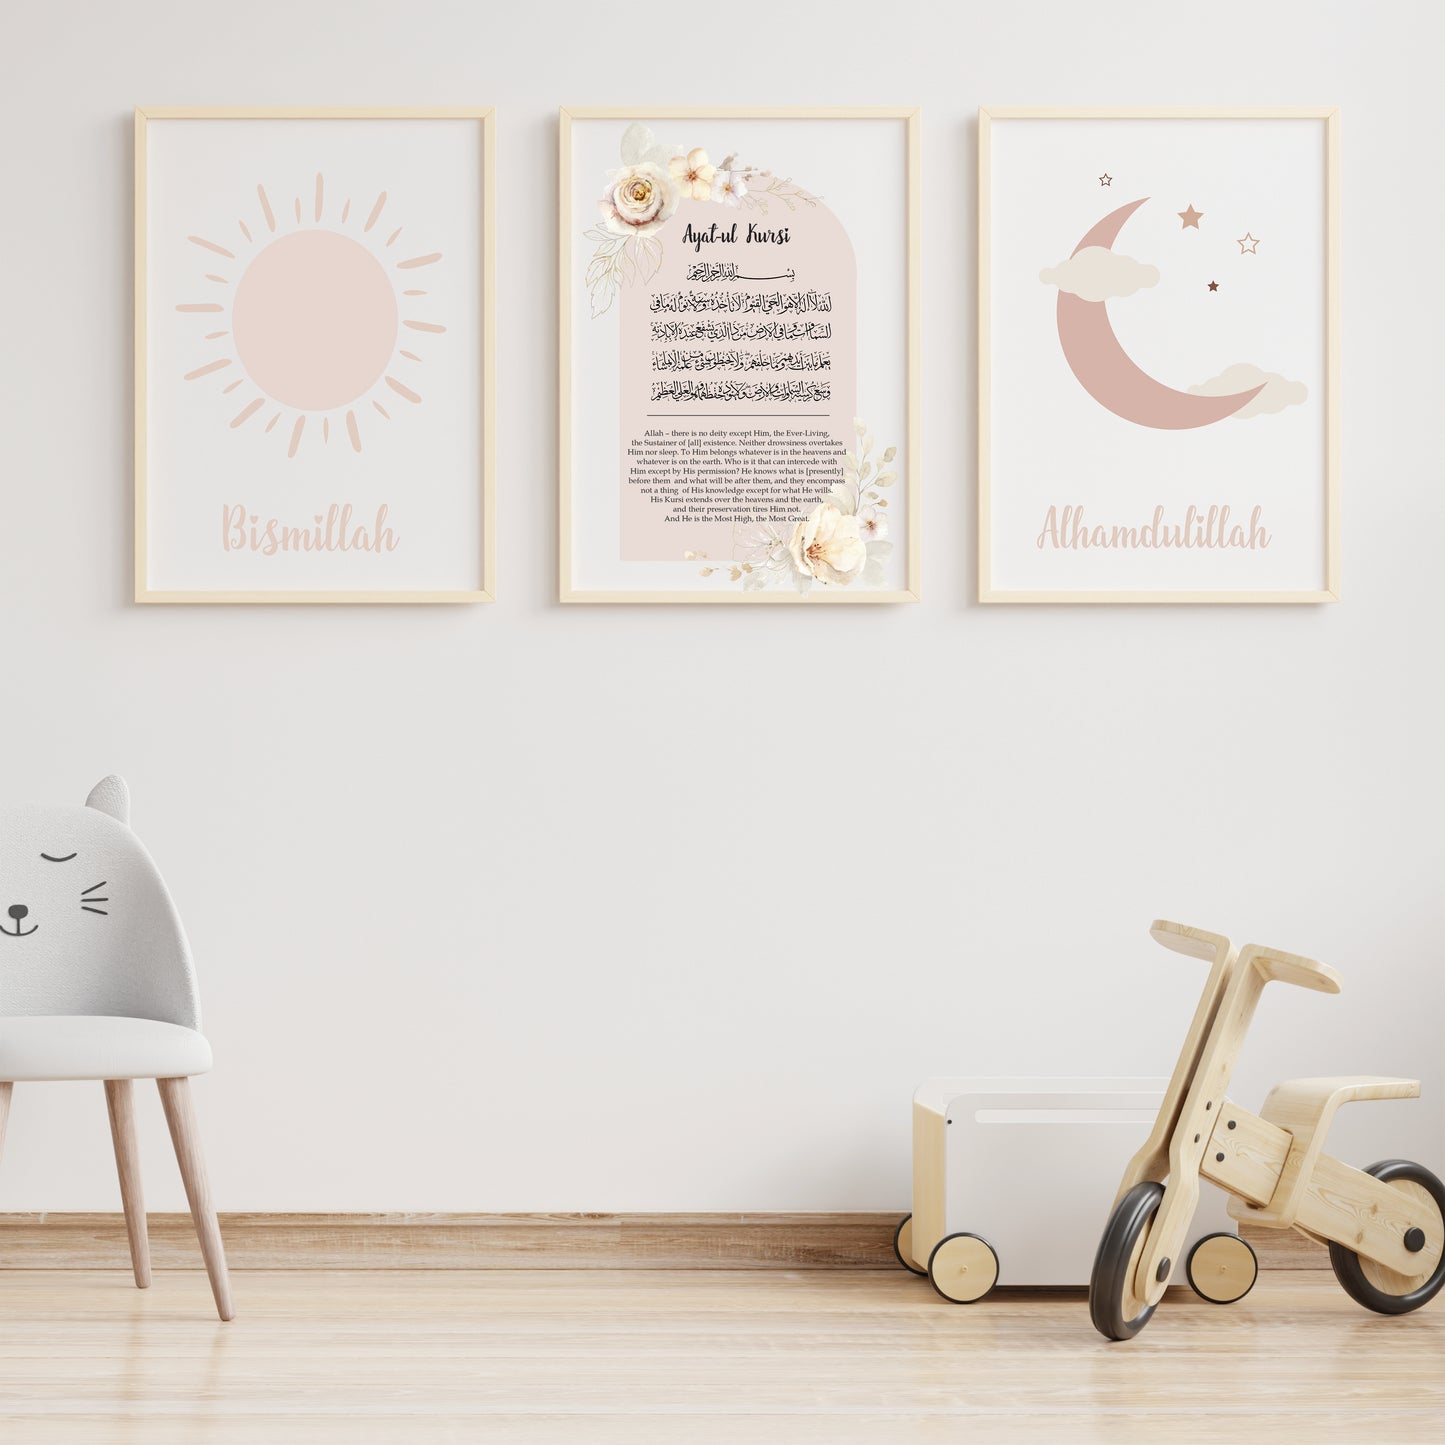 Babykamer posters set 3 stuks - Kinderkamer decoratie - ayet ul kursi islamitische poster - Kinder poster - Beige - maan zon